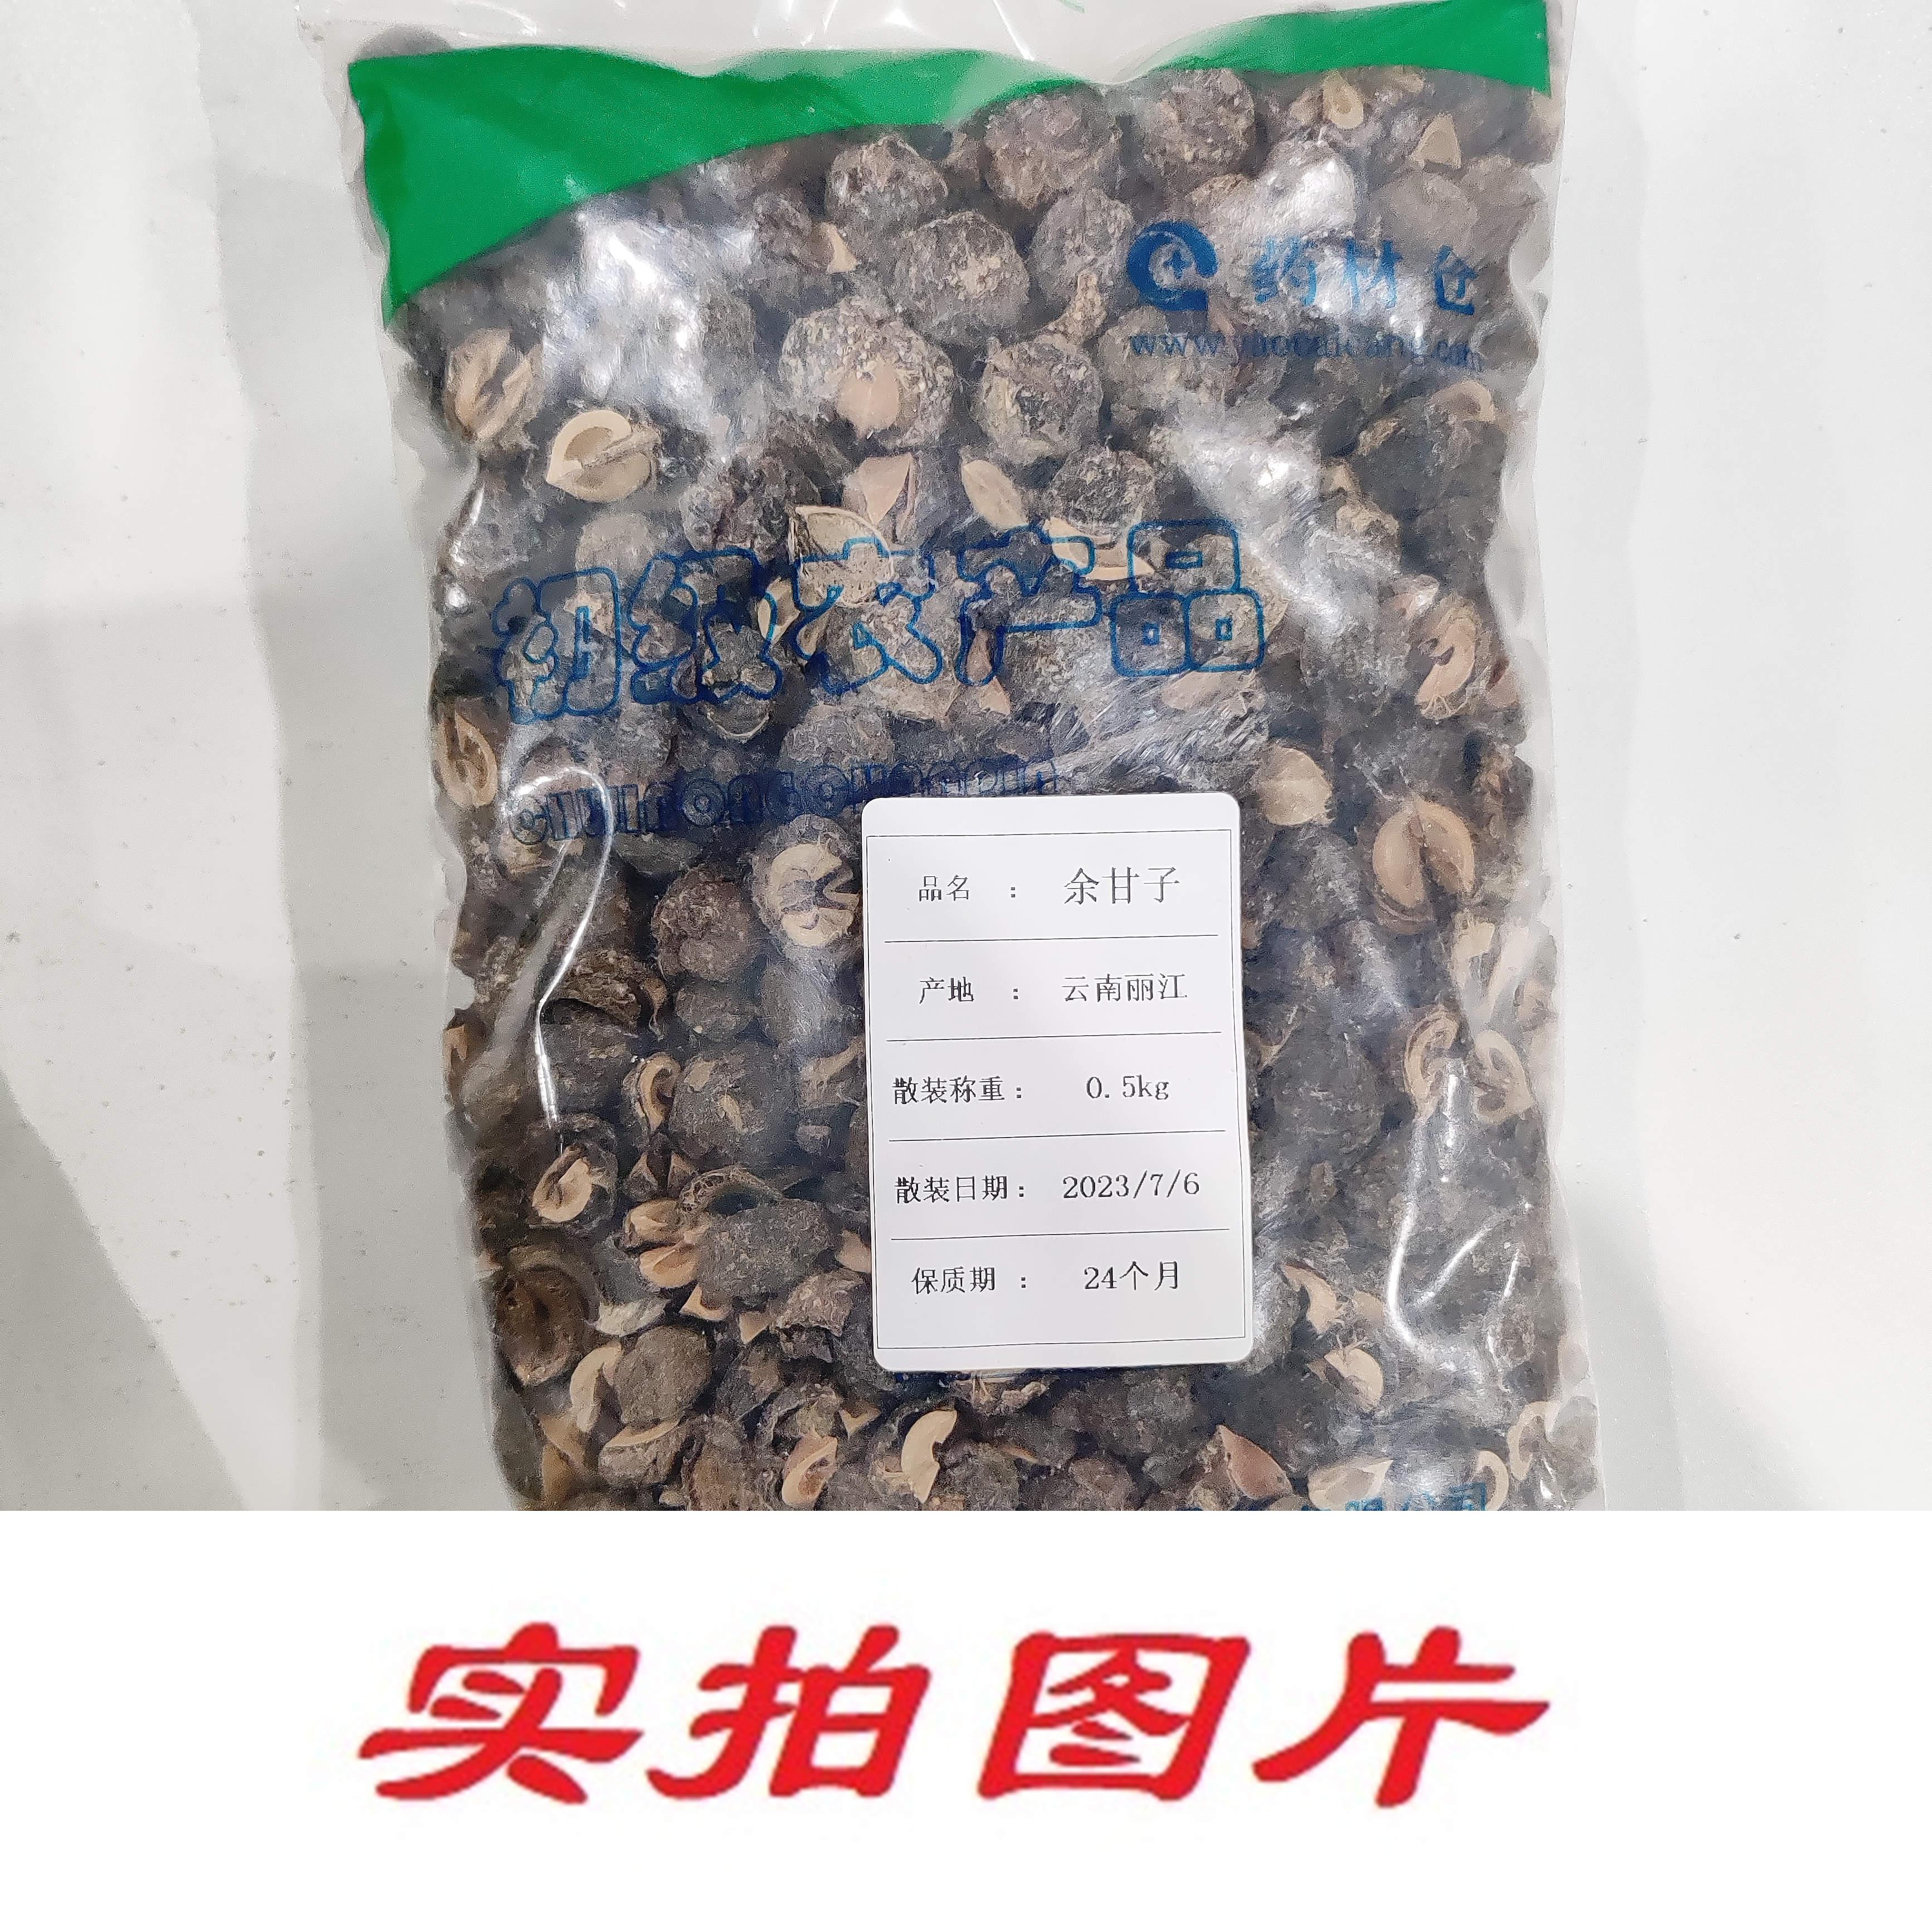 【】余甘子0.5kg-农副产品